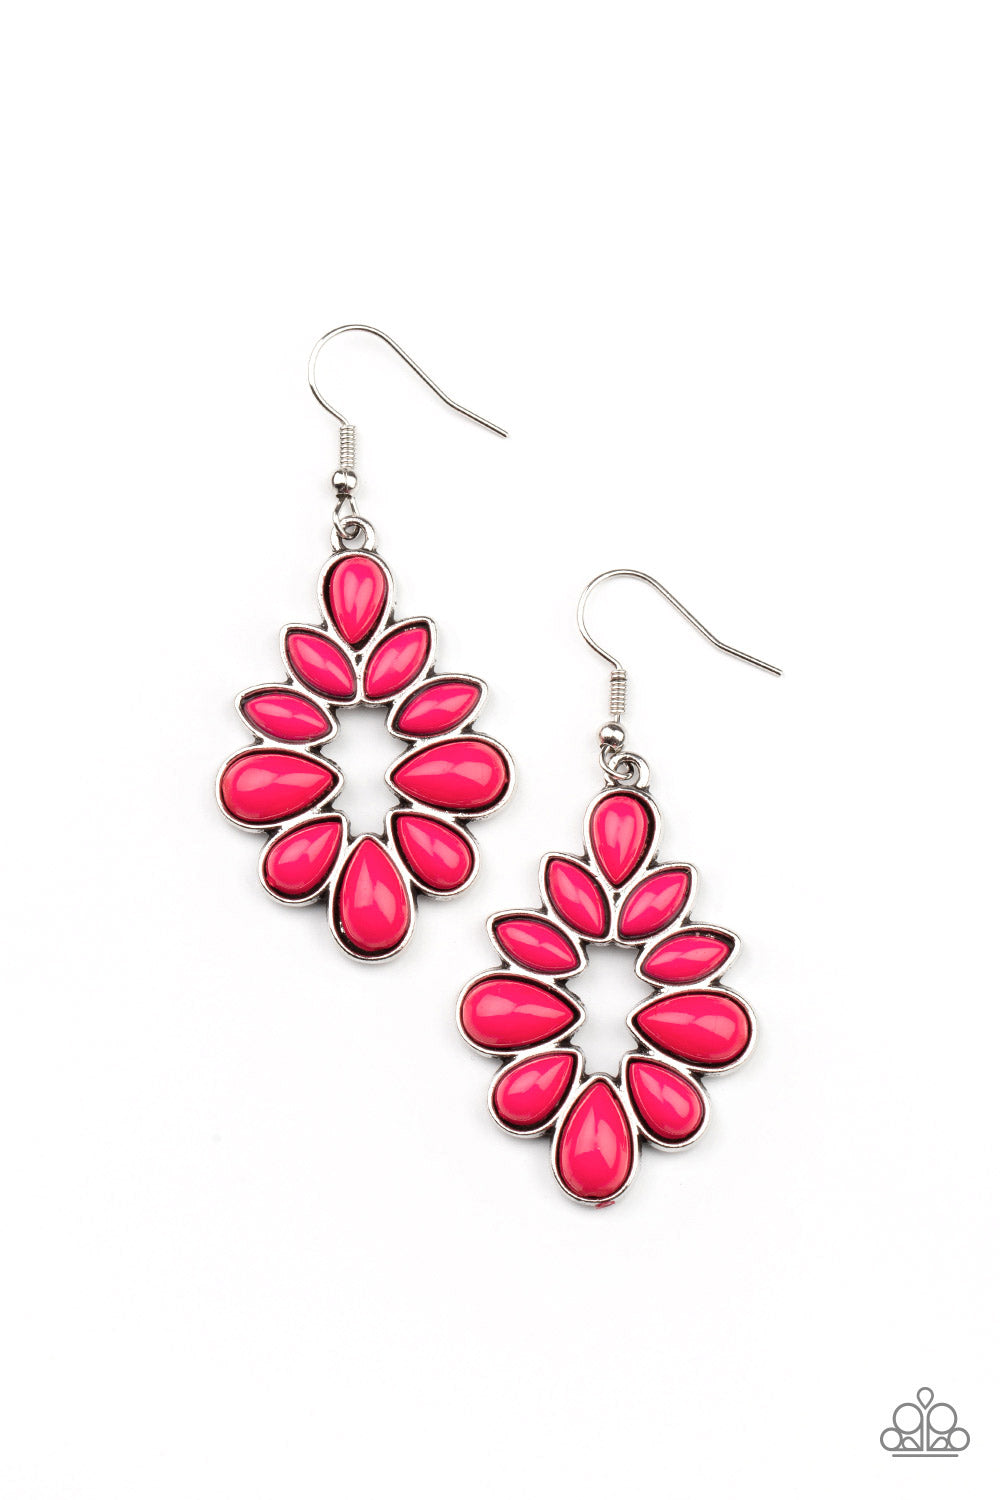 Burst Into Teardrops - pink - Paparazzi earrings – JewelryBlingThing